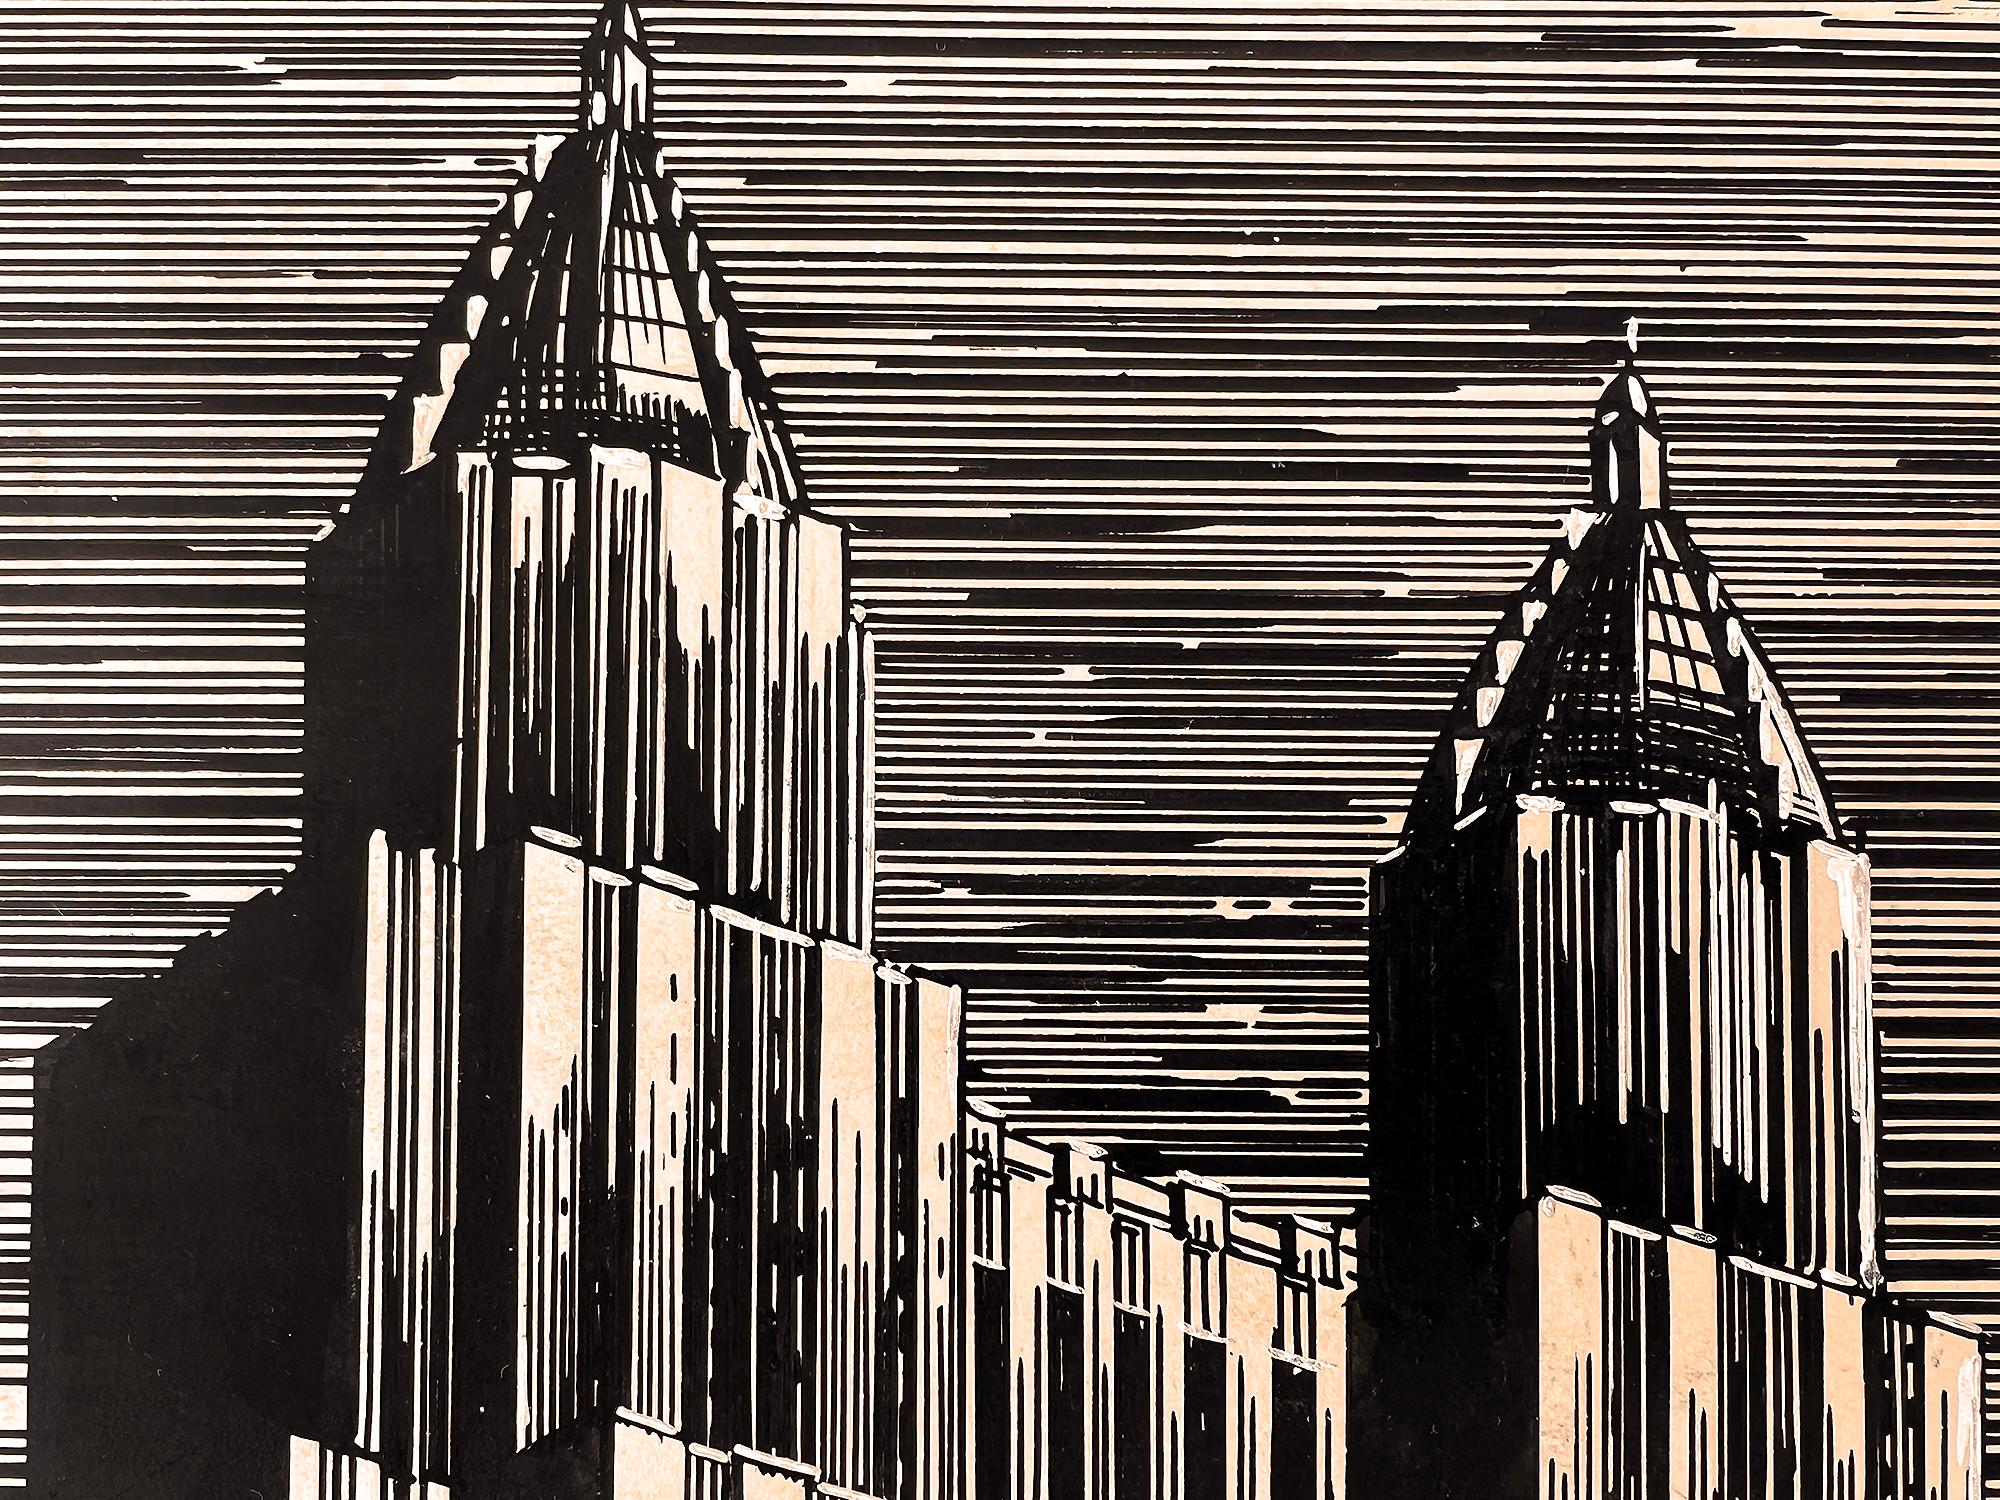 Der Künstler Charles Perry Weimer setzt dünne schwarze horizontale Linien ein, die sich mit dünnen schwarzen vertikalen Linien kreuzen. Das Ergebnis ist ein Triumph des Designs, bei dem sich das hoch stilisierte, pulsierende Bild des neuen Waldorf